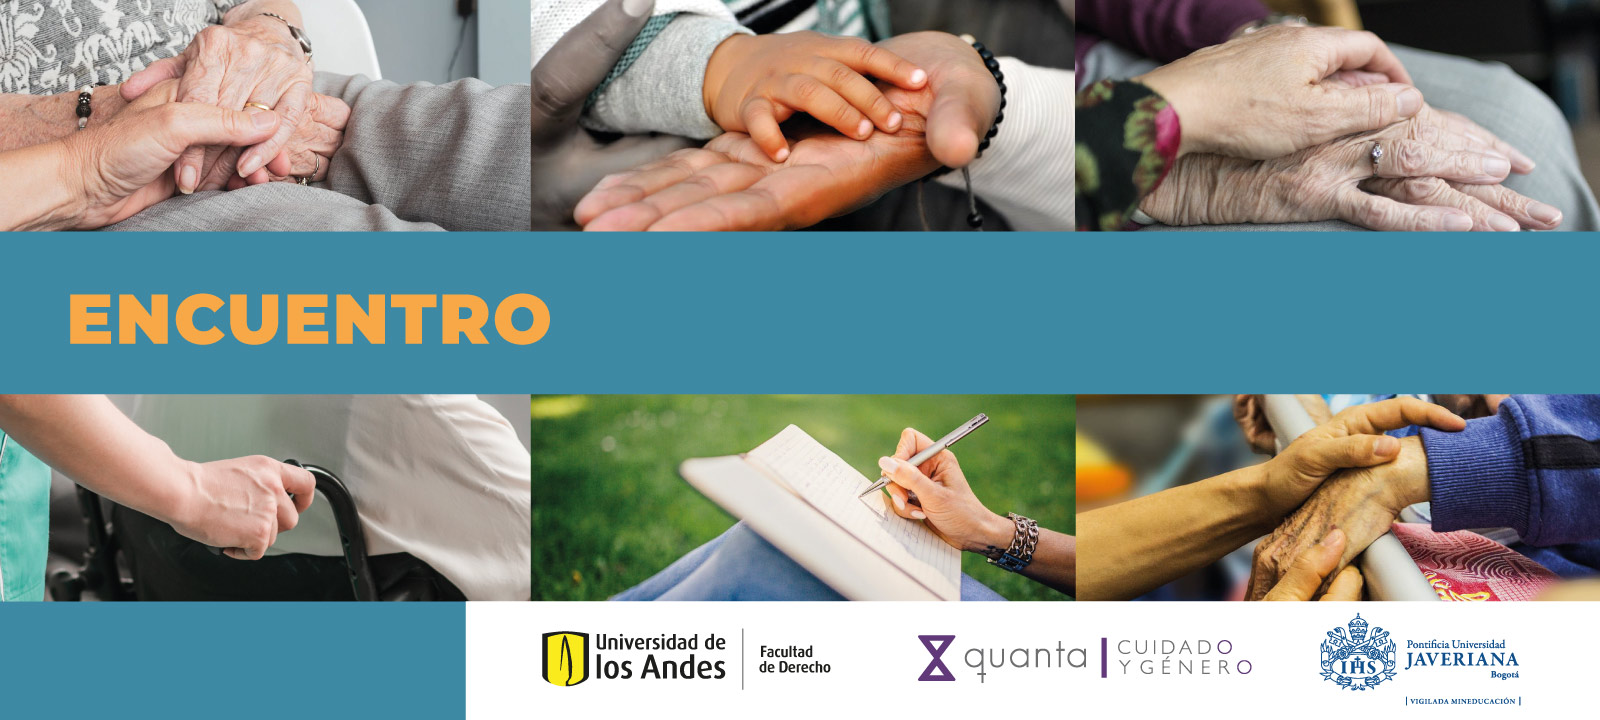 Investigar el cuidado en colombia: la academia en diálogo con las organizaciones de la sociedad civil 